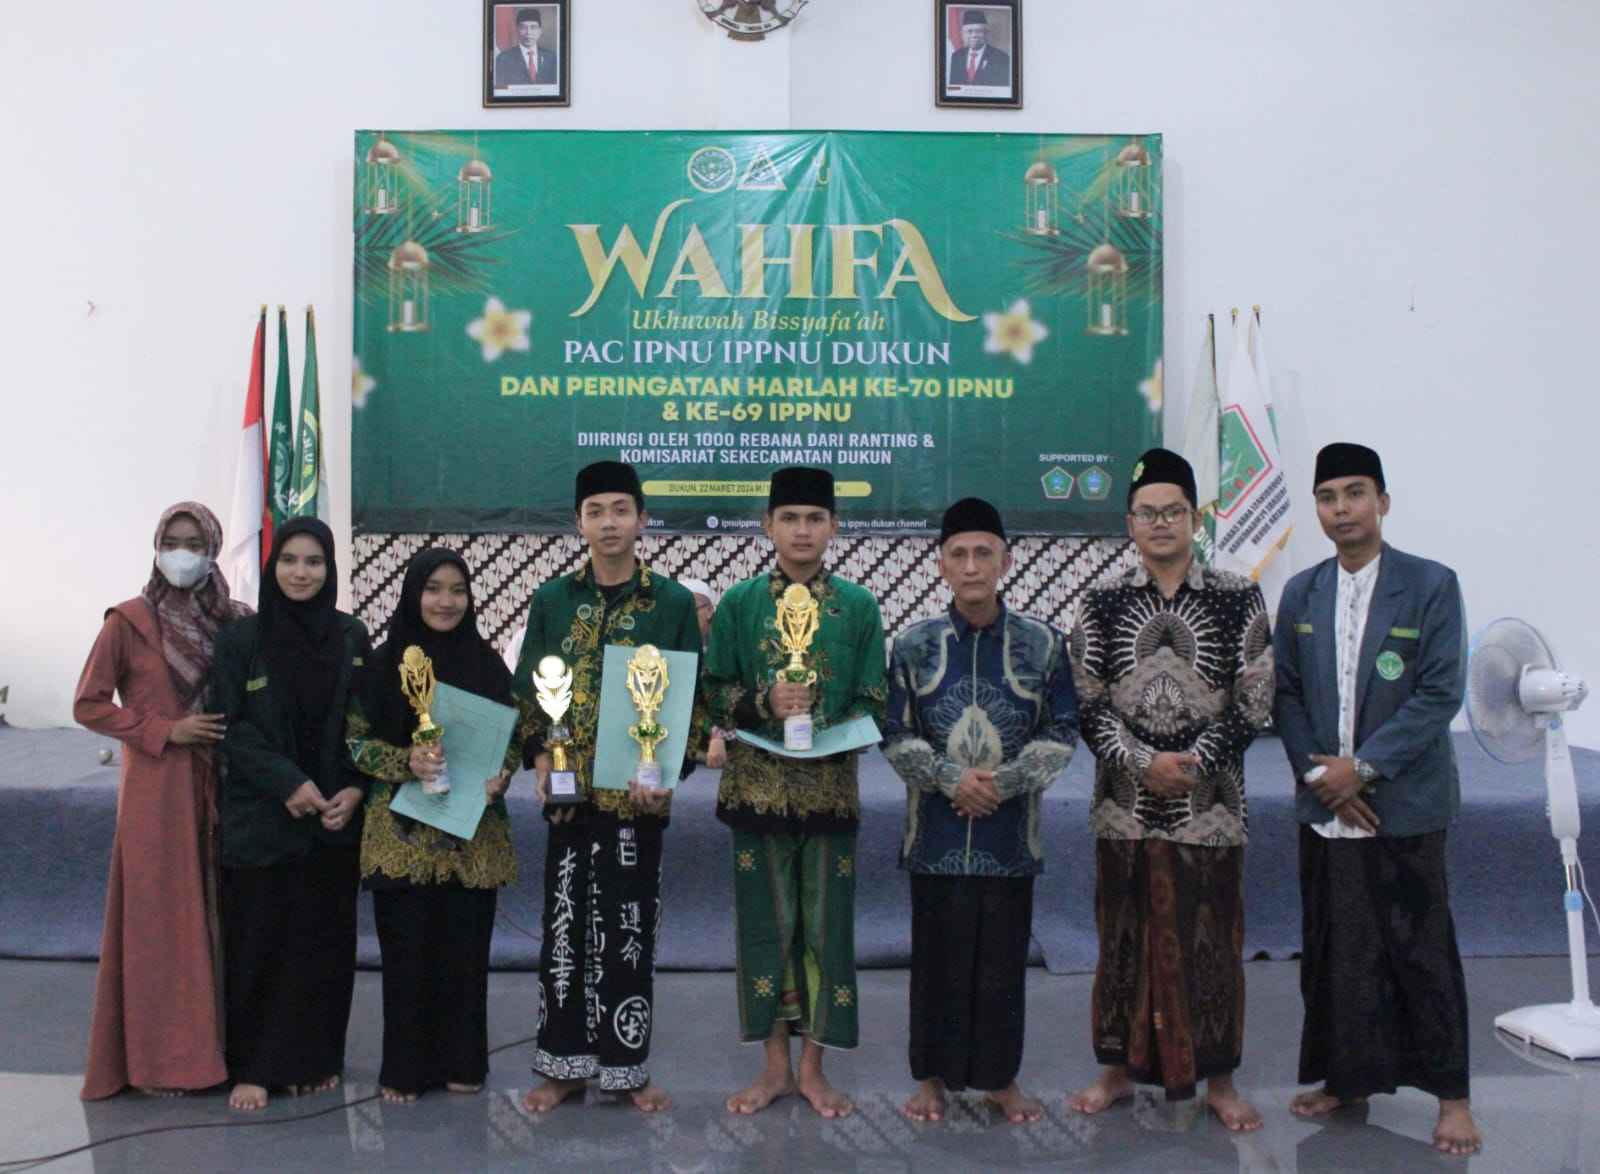 Pada kegiatan Wahfa ini PAC IPNU IPPNU Dukun menyerahkan hadiah pemenang lomba